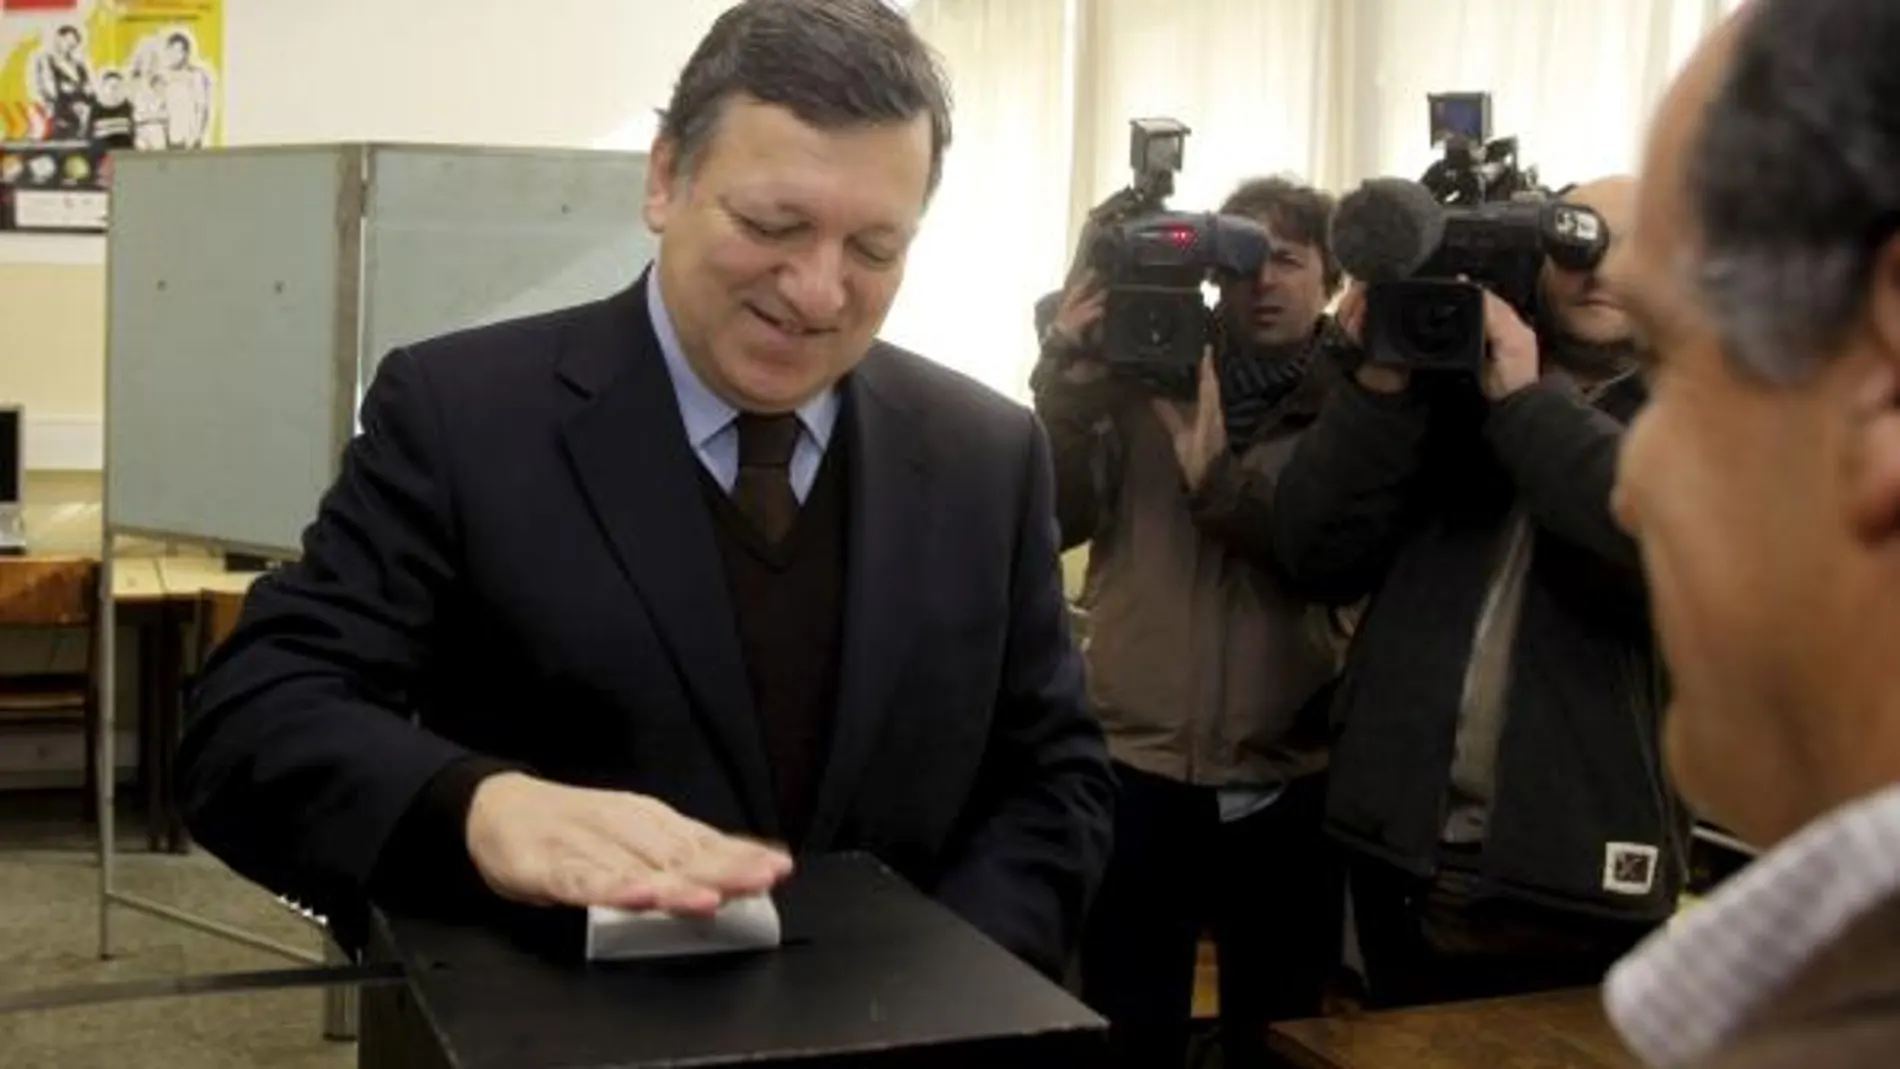 El presidente de la Comisión Europea, José Manuel Durão Barroso acude a votar a un colegio electoral en Lisboa, Portugal.